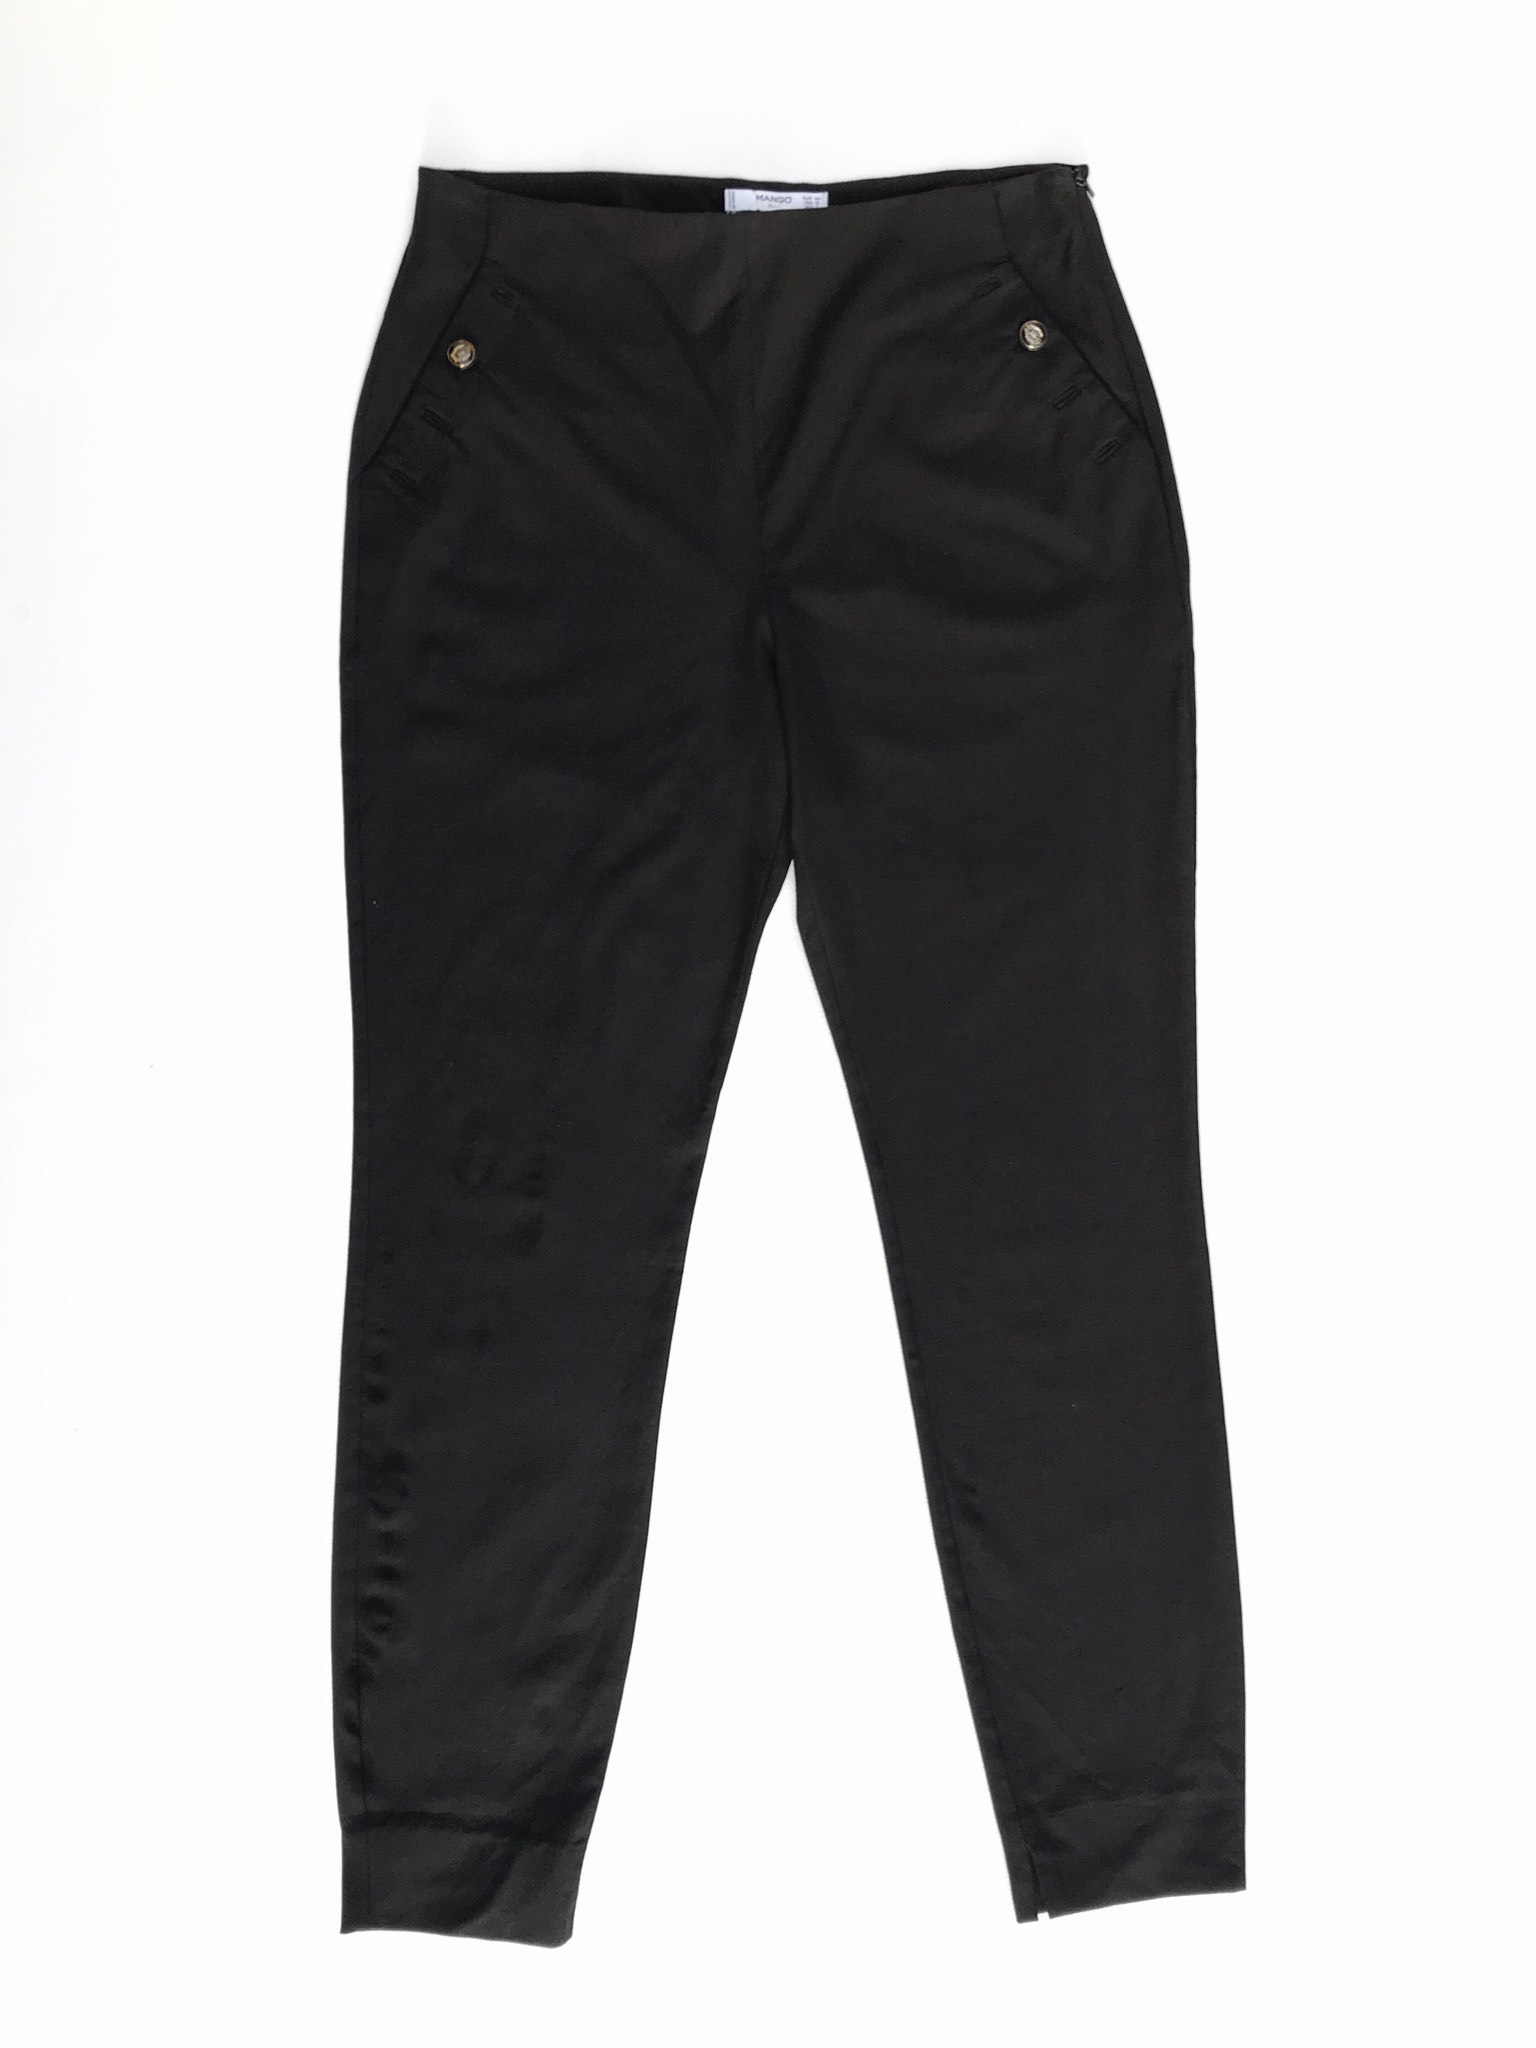 Pantalón Mango negro stretch, a la cintura, cierre lateral, ojales y dos botones, corte pitillo. Precio original S/180
Talla 34 (L / USA12)